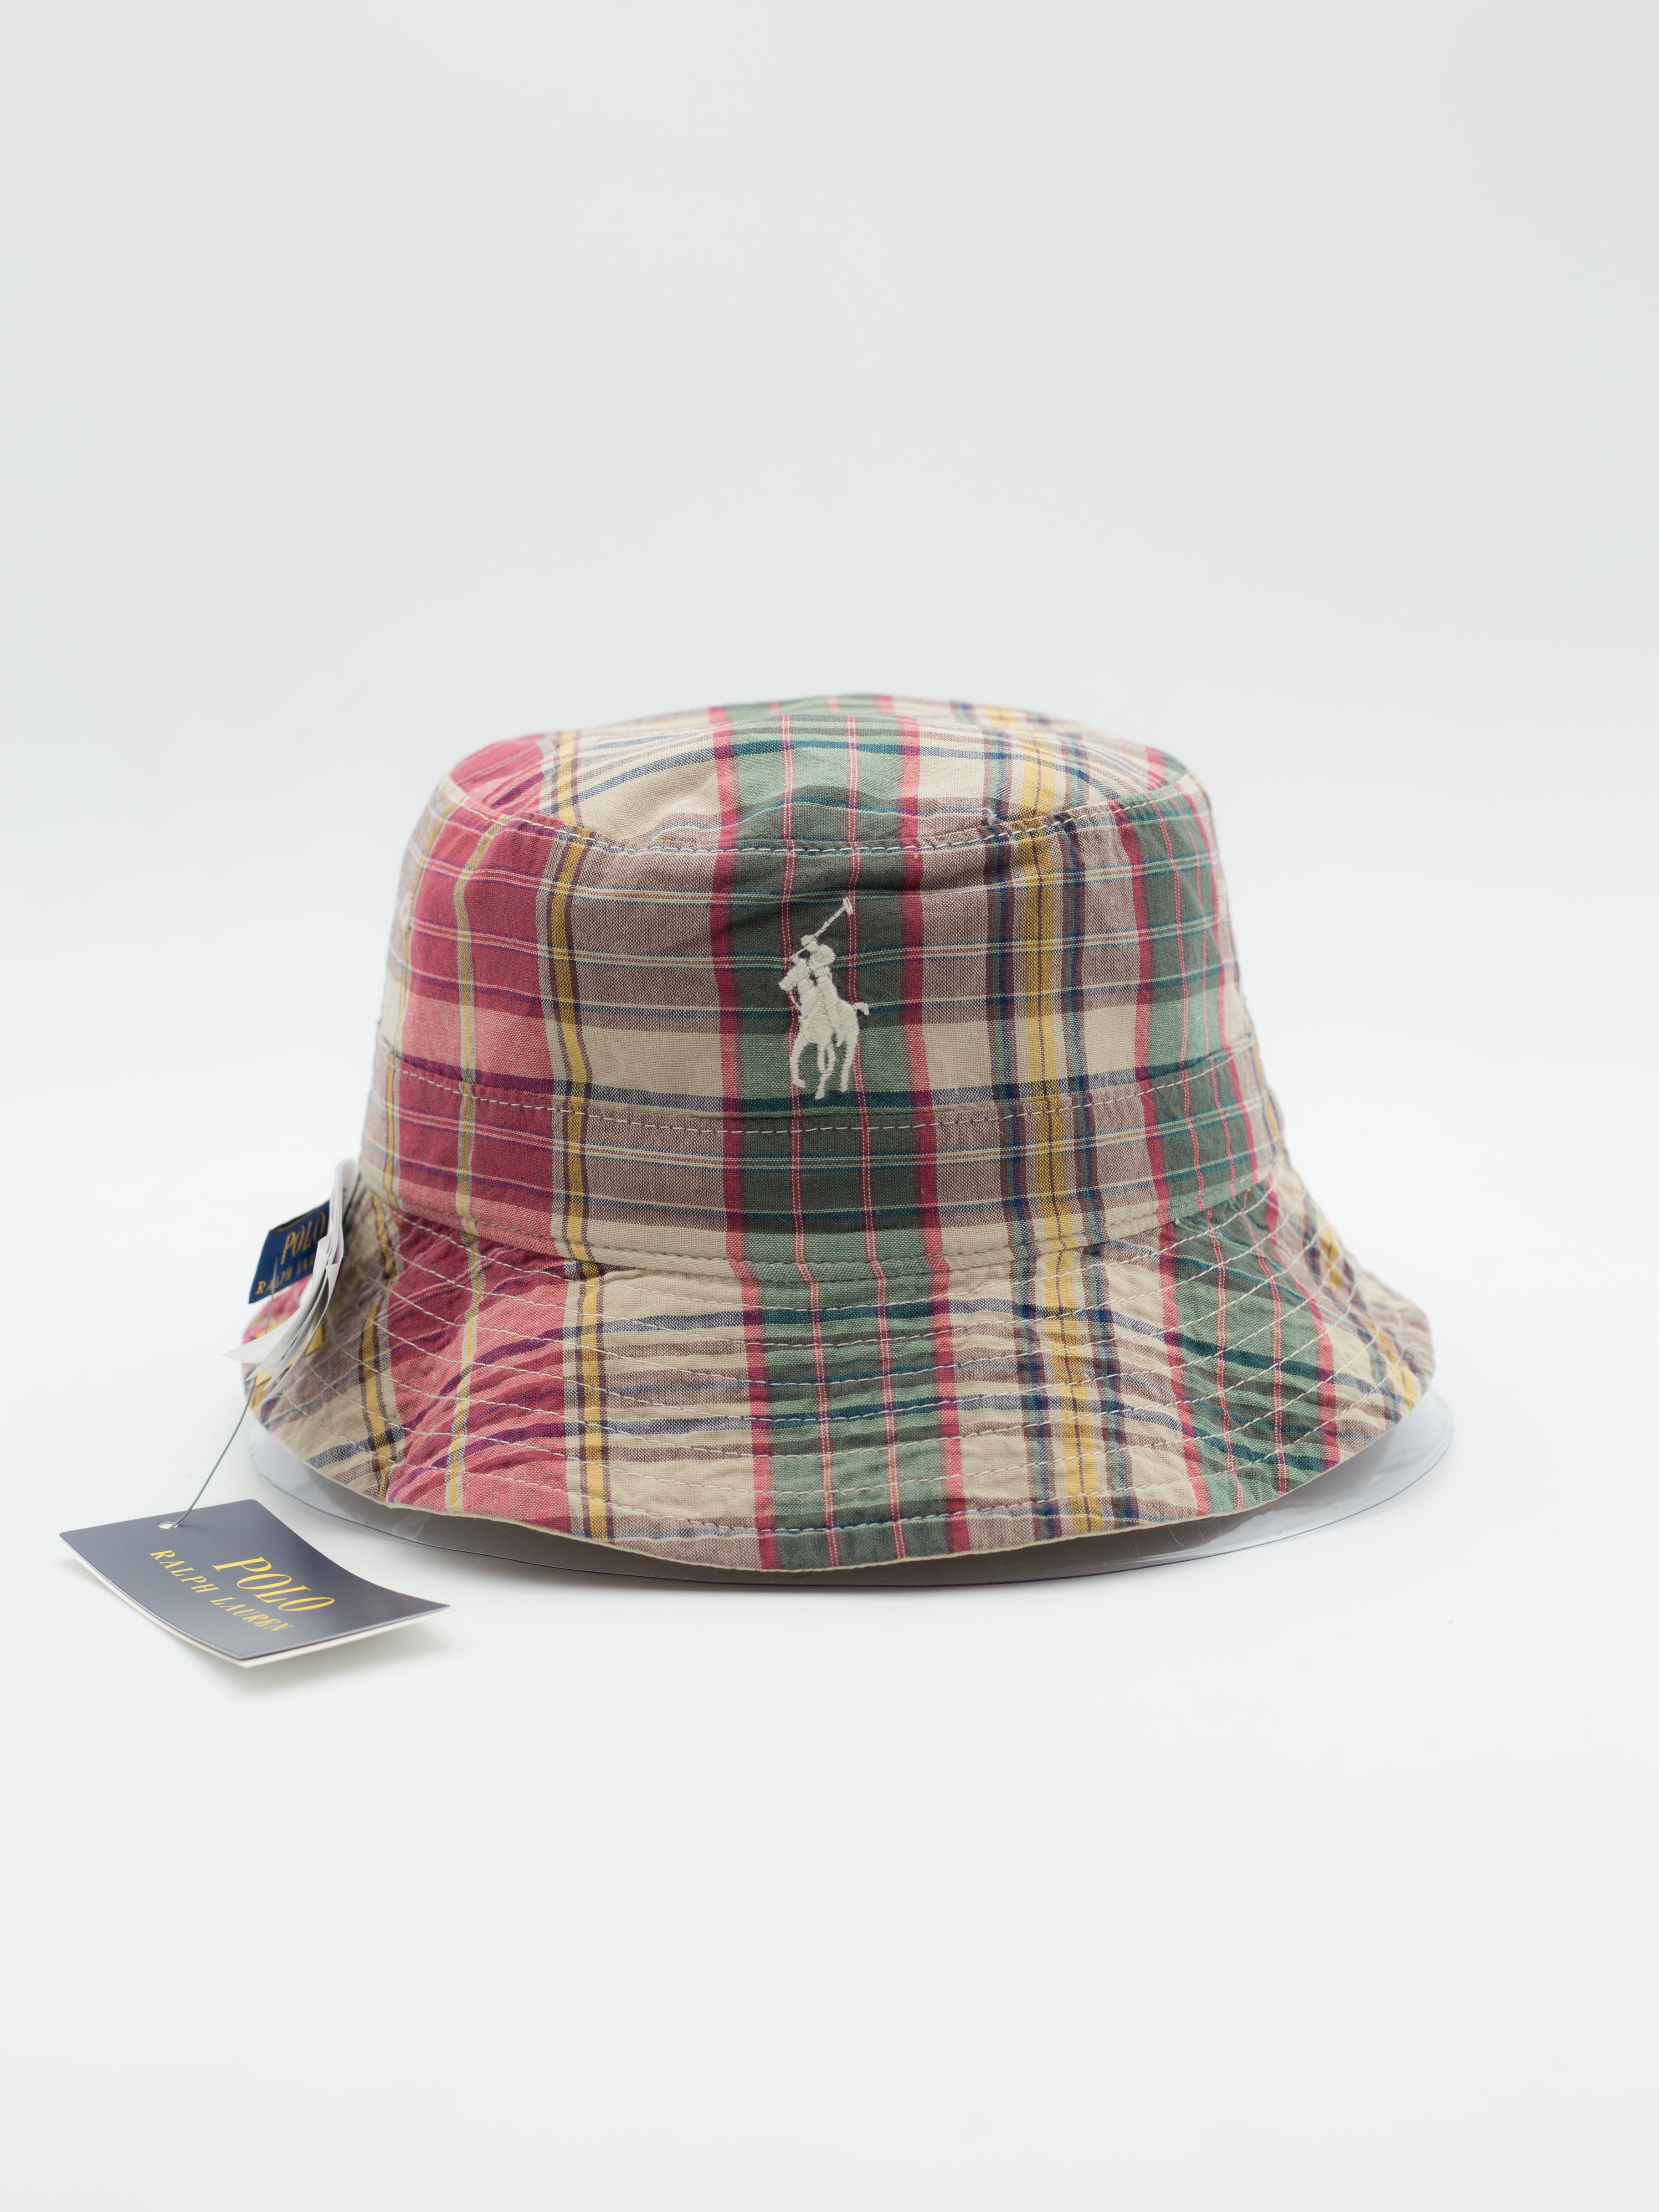 Classic TBD Polo Loft Bucket Hat Khaki Reversible - La Tienda de las Gorras